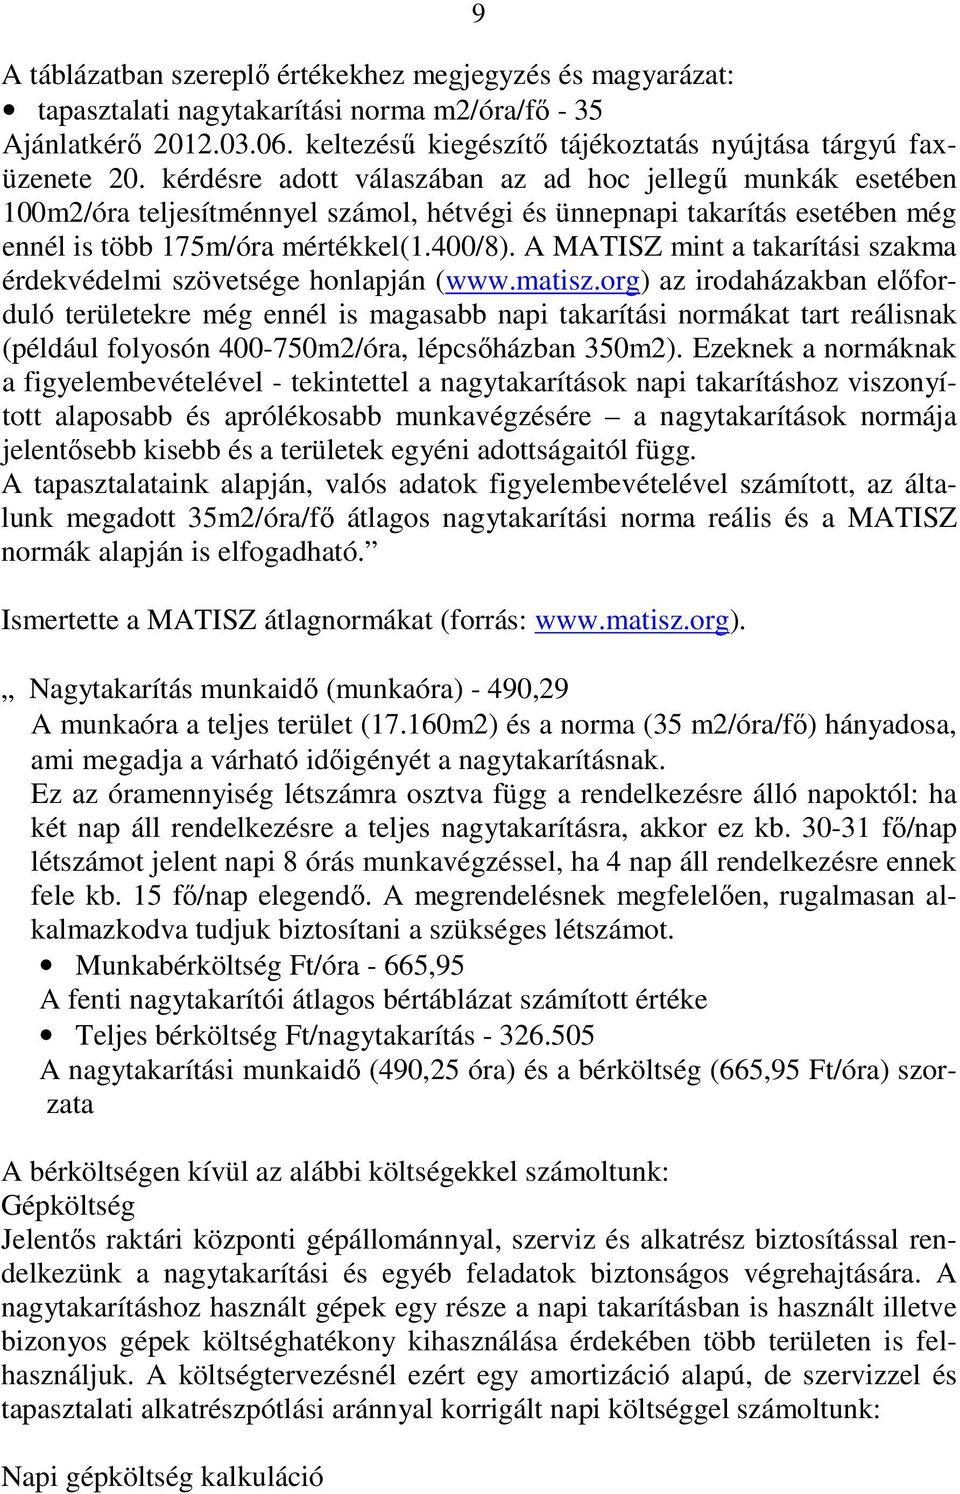 A MATISZ mint a takarítási szakma érdekvédelmi szövetsége honlapján (www.matisz.